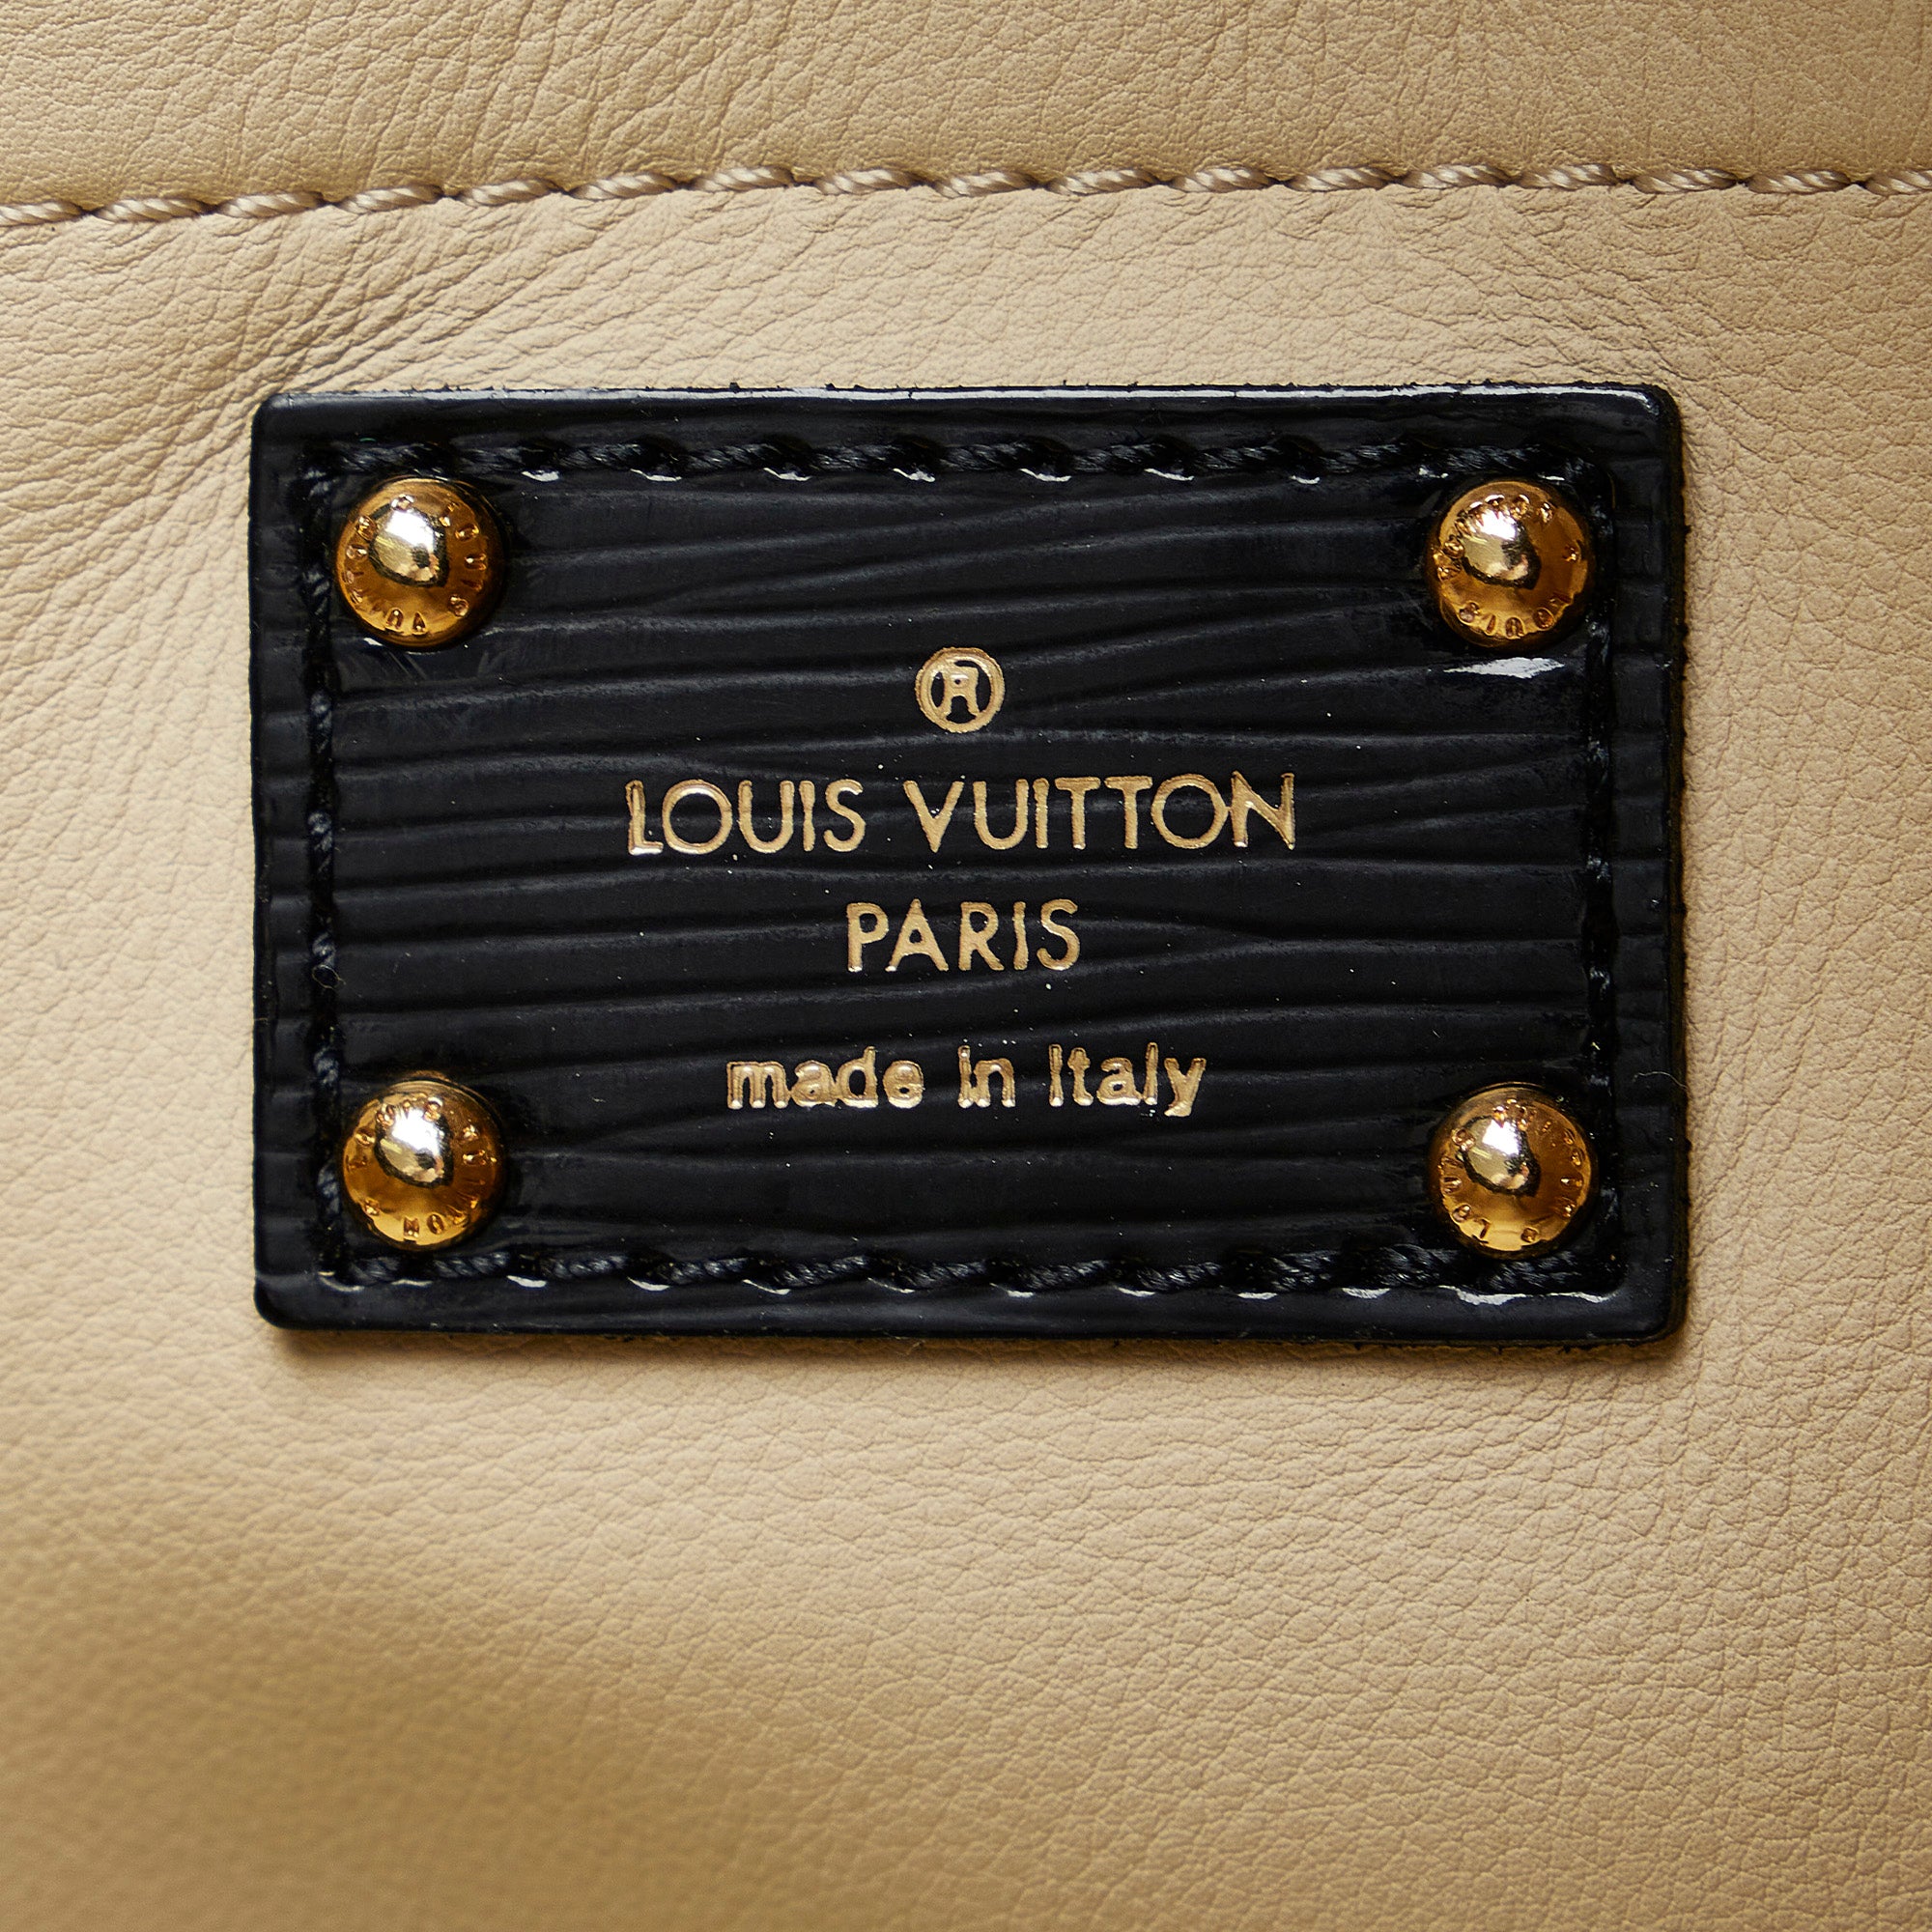 Louis Vuitton Vintage Vinyl Monogram Squishy inventeur Bag